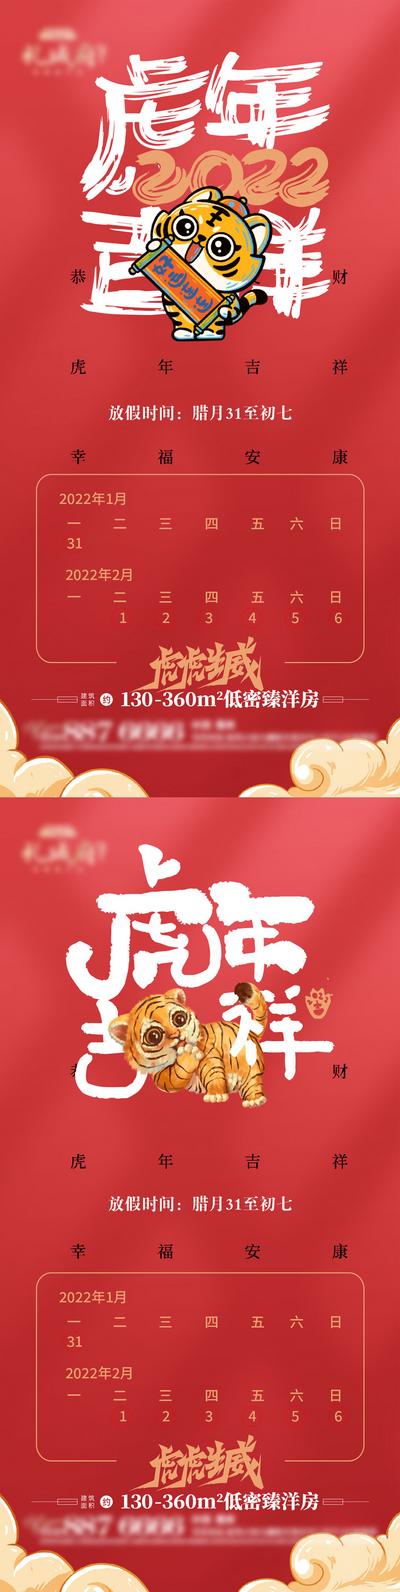 南门网 海报 房地产 中国传统节日 虎年 春节 放假 通知 红金 系列